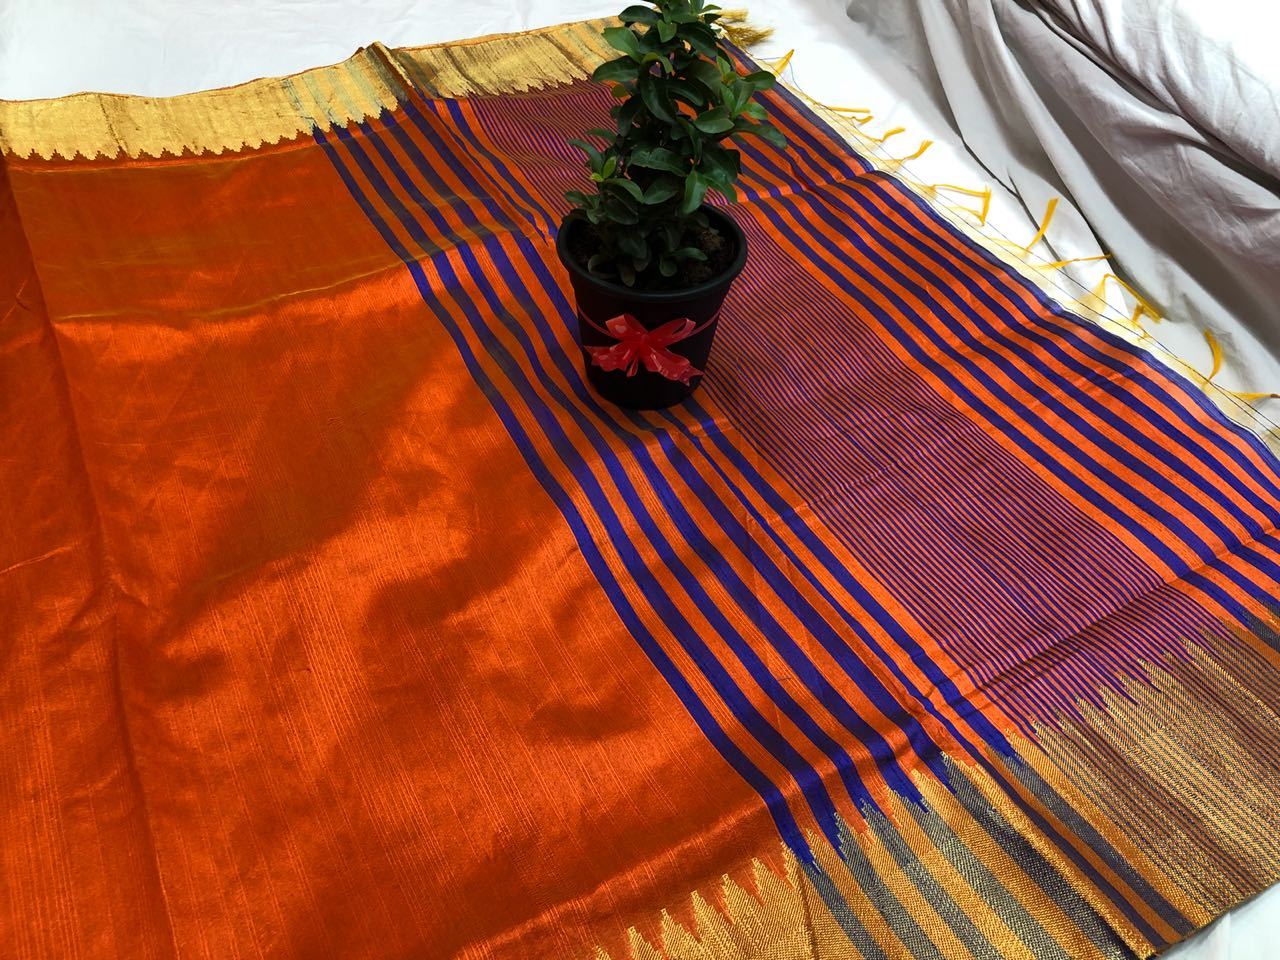 Amber Glow Banarasi Raw Silk Saree-BNS032 yellow and maroon coloured plain silk saree